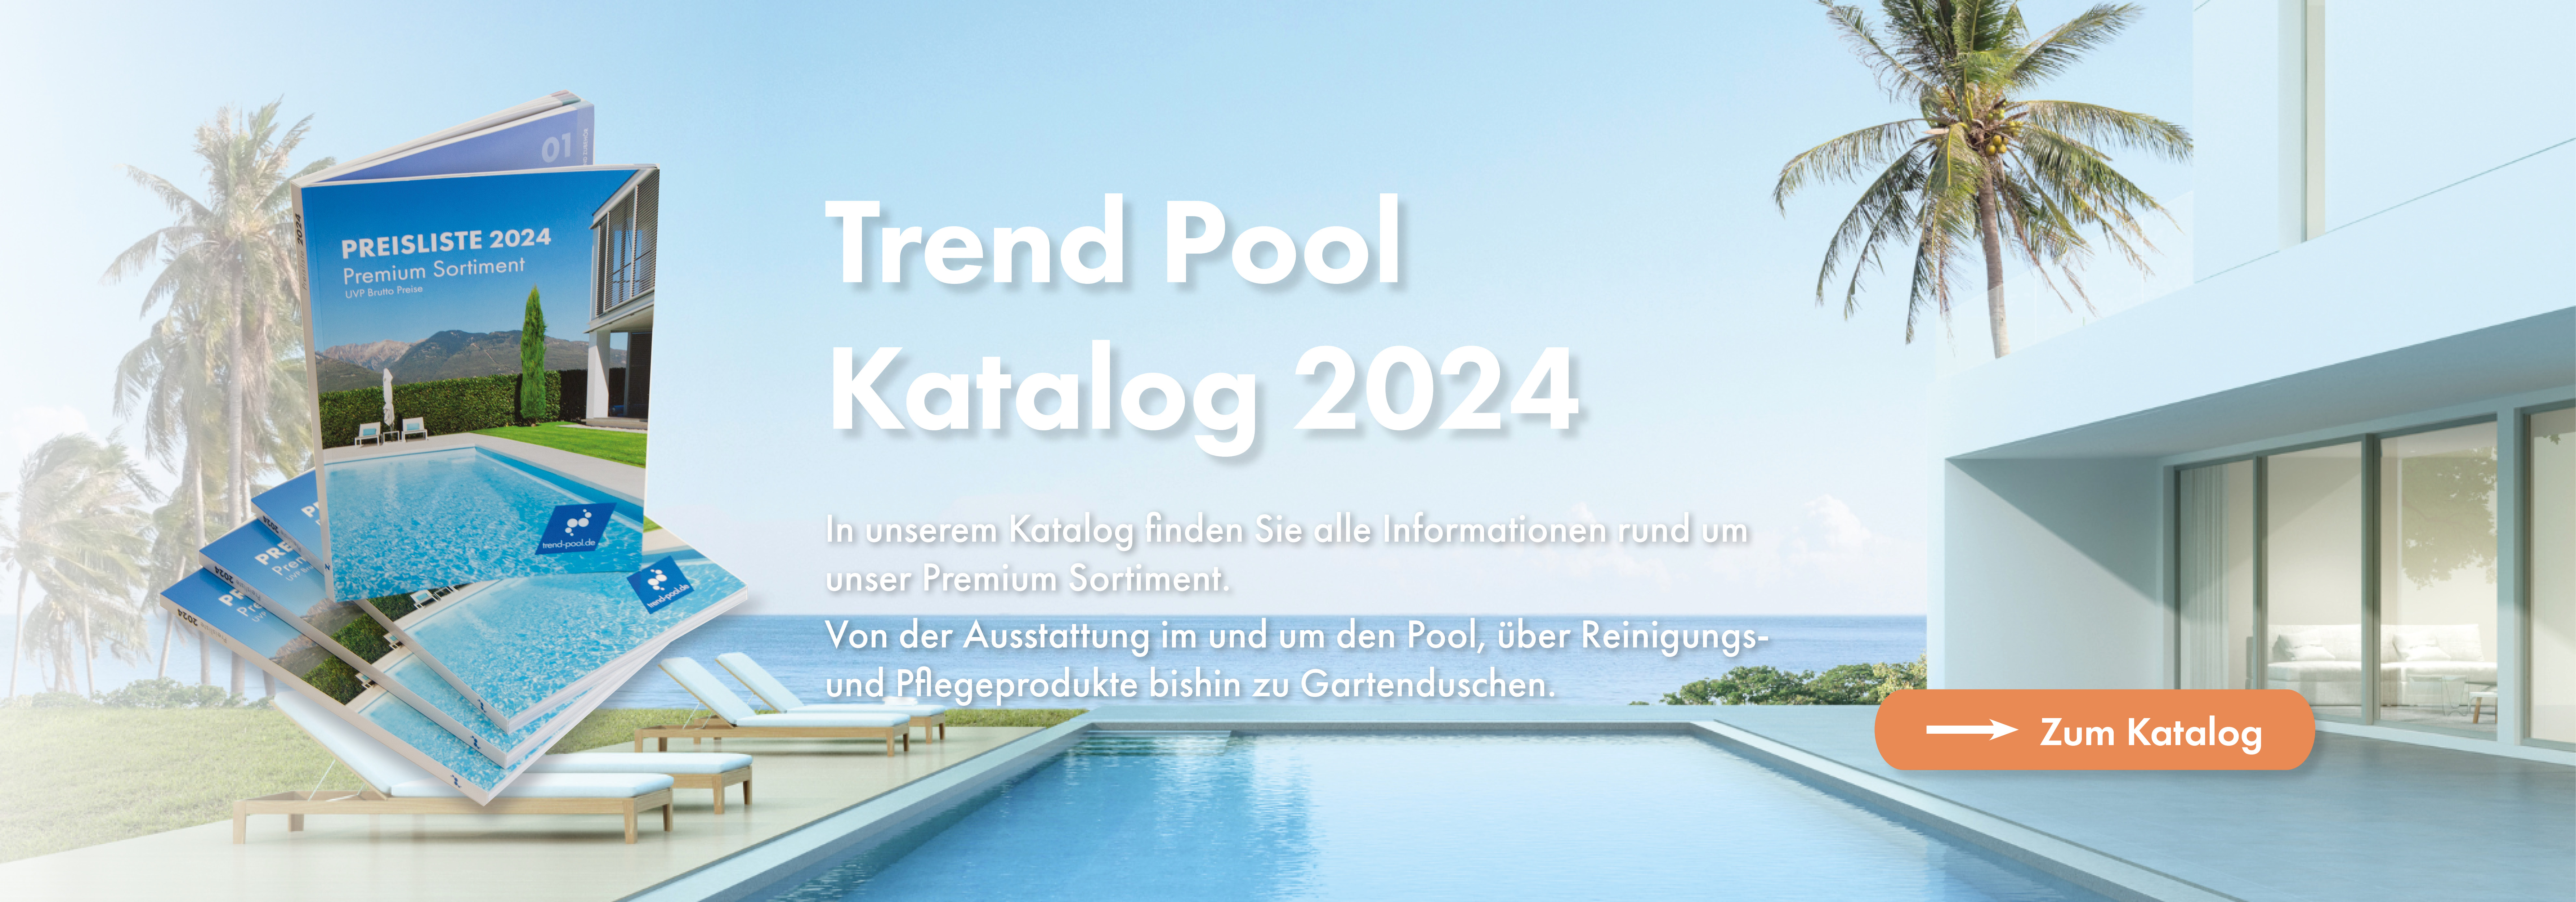 trend-pool-katalog